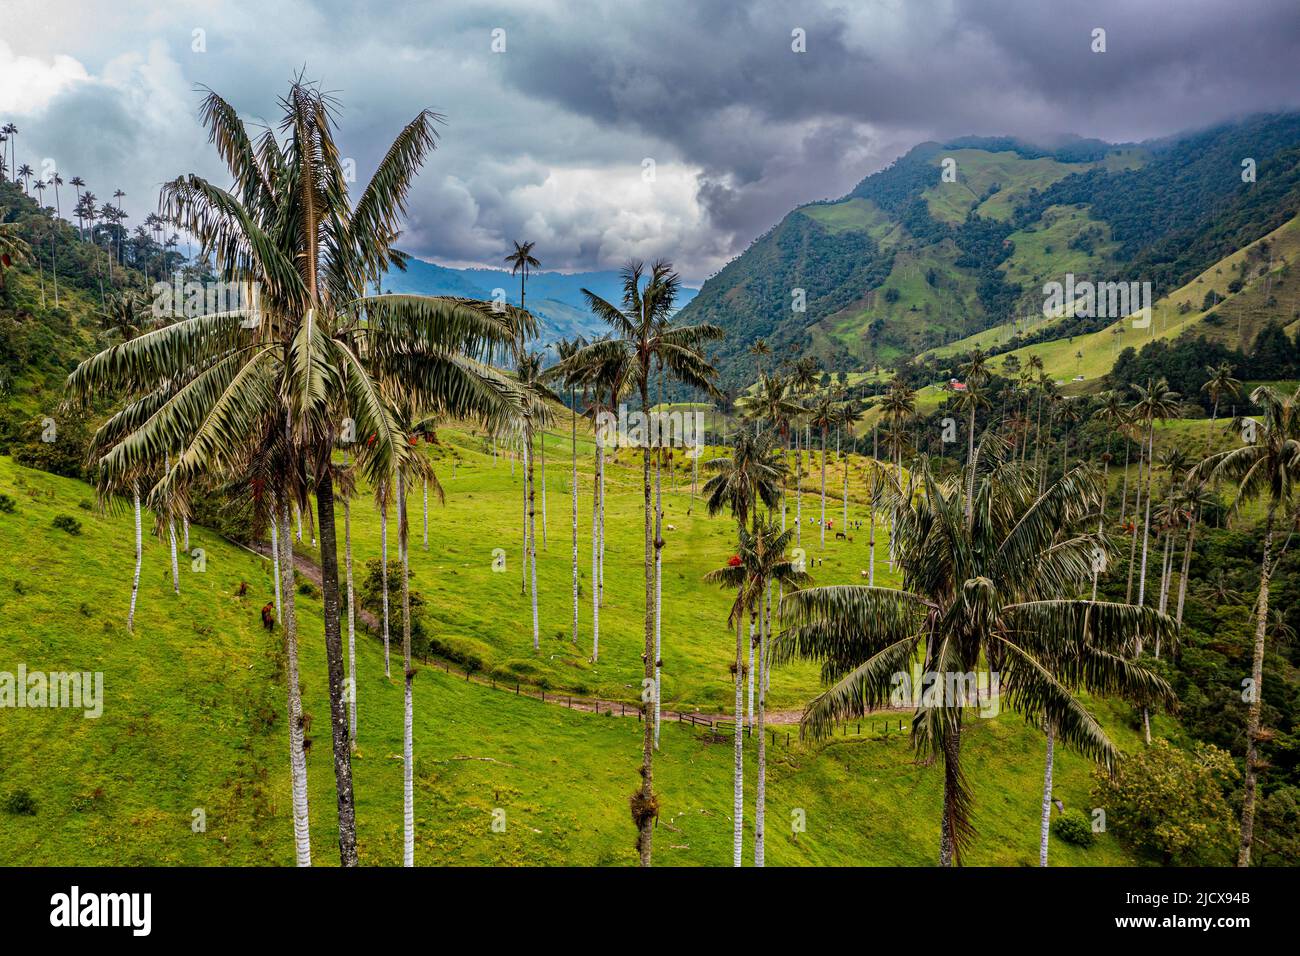 Palmiers à cire les plus grands palmiers du monde, la vallée de Cocora, site classé au patrimoine mondial de l'UNESCO, Paysage culturel du café, Salento, Colombie, Amérique du Sud Banque D'Images